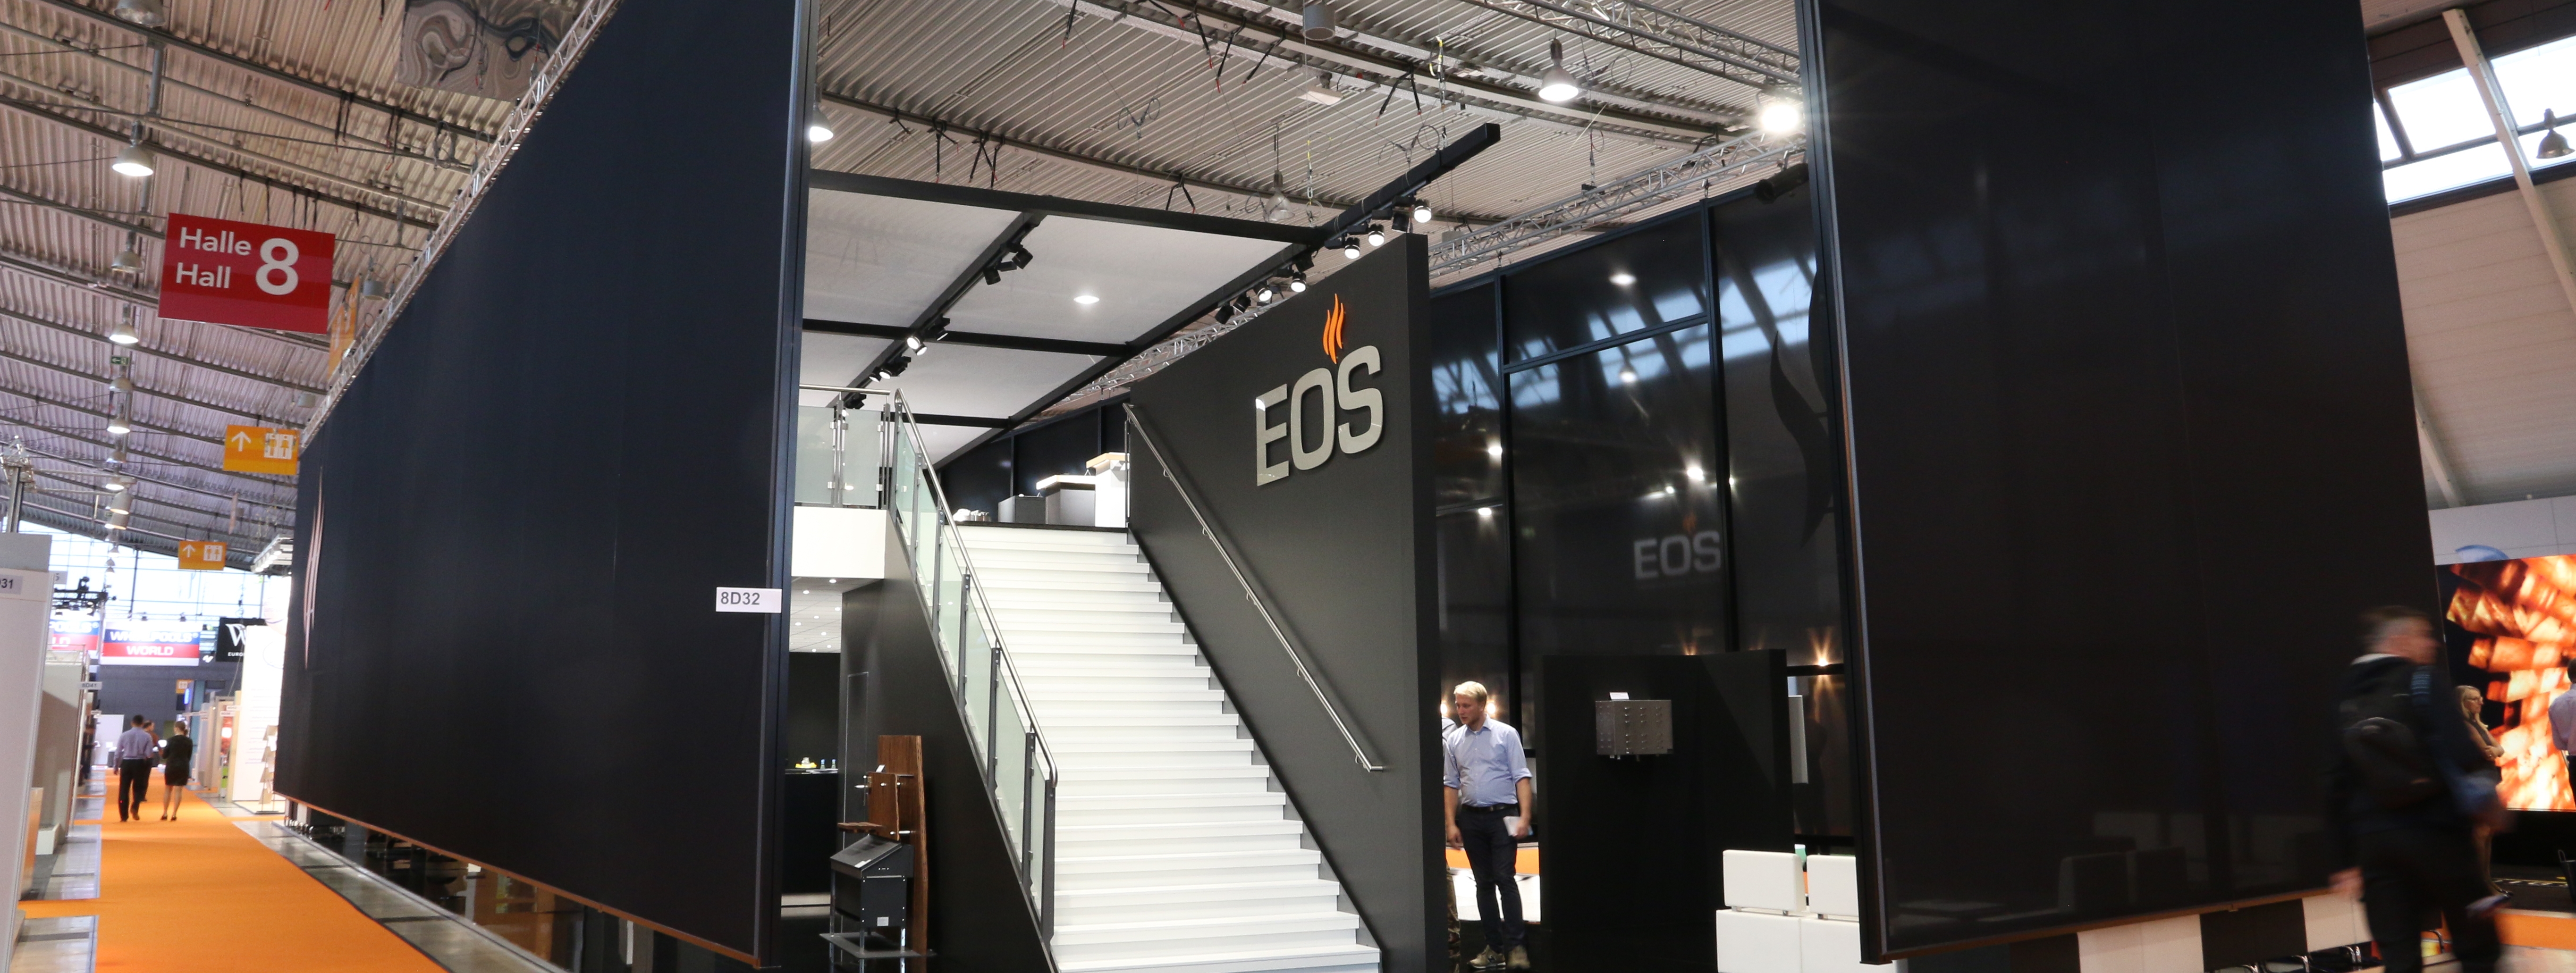 Стенд завода EOS Saunatechnik GmbH на выставке Interbad 2019 